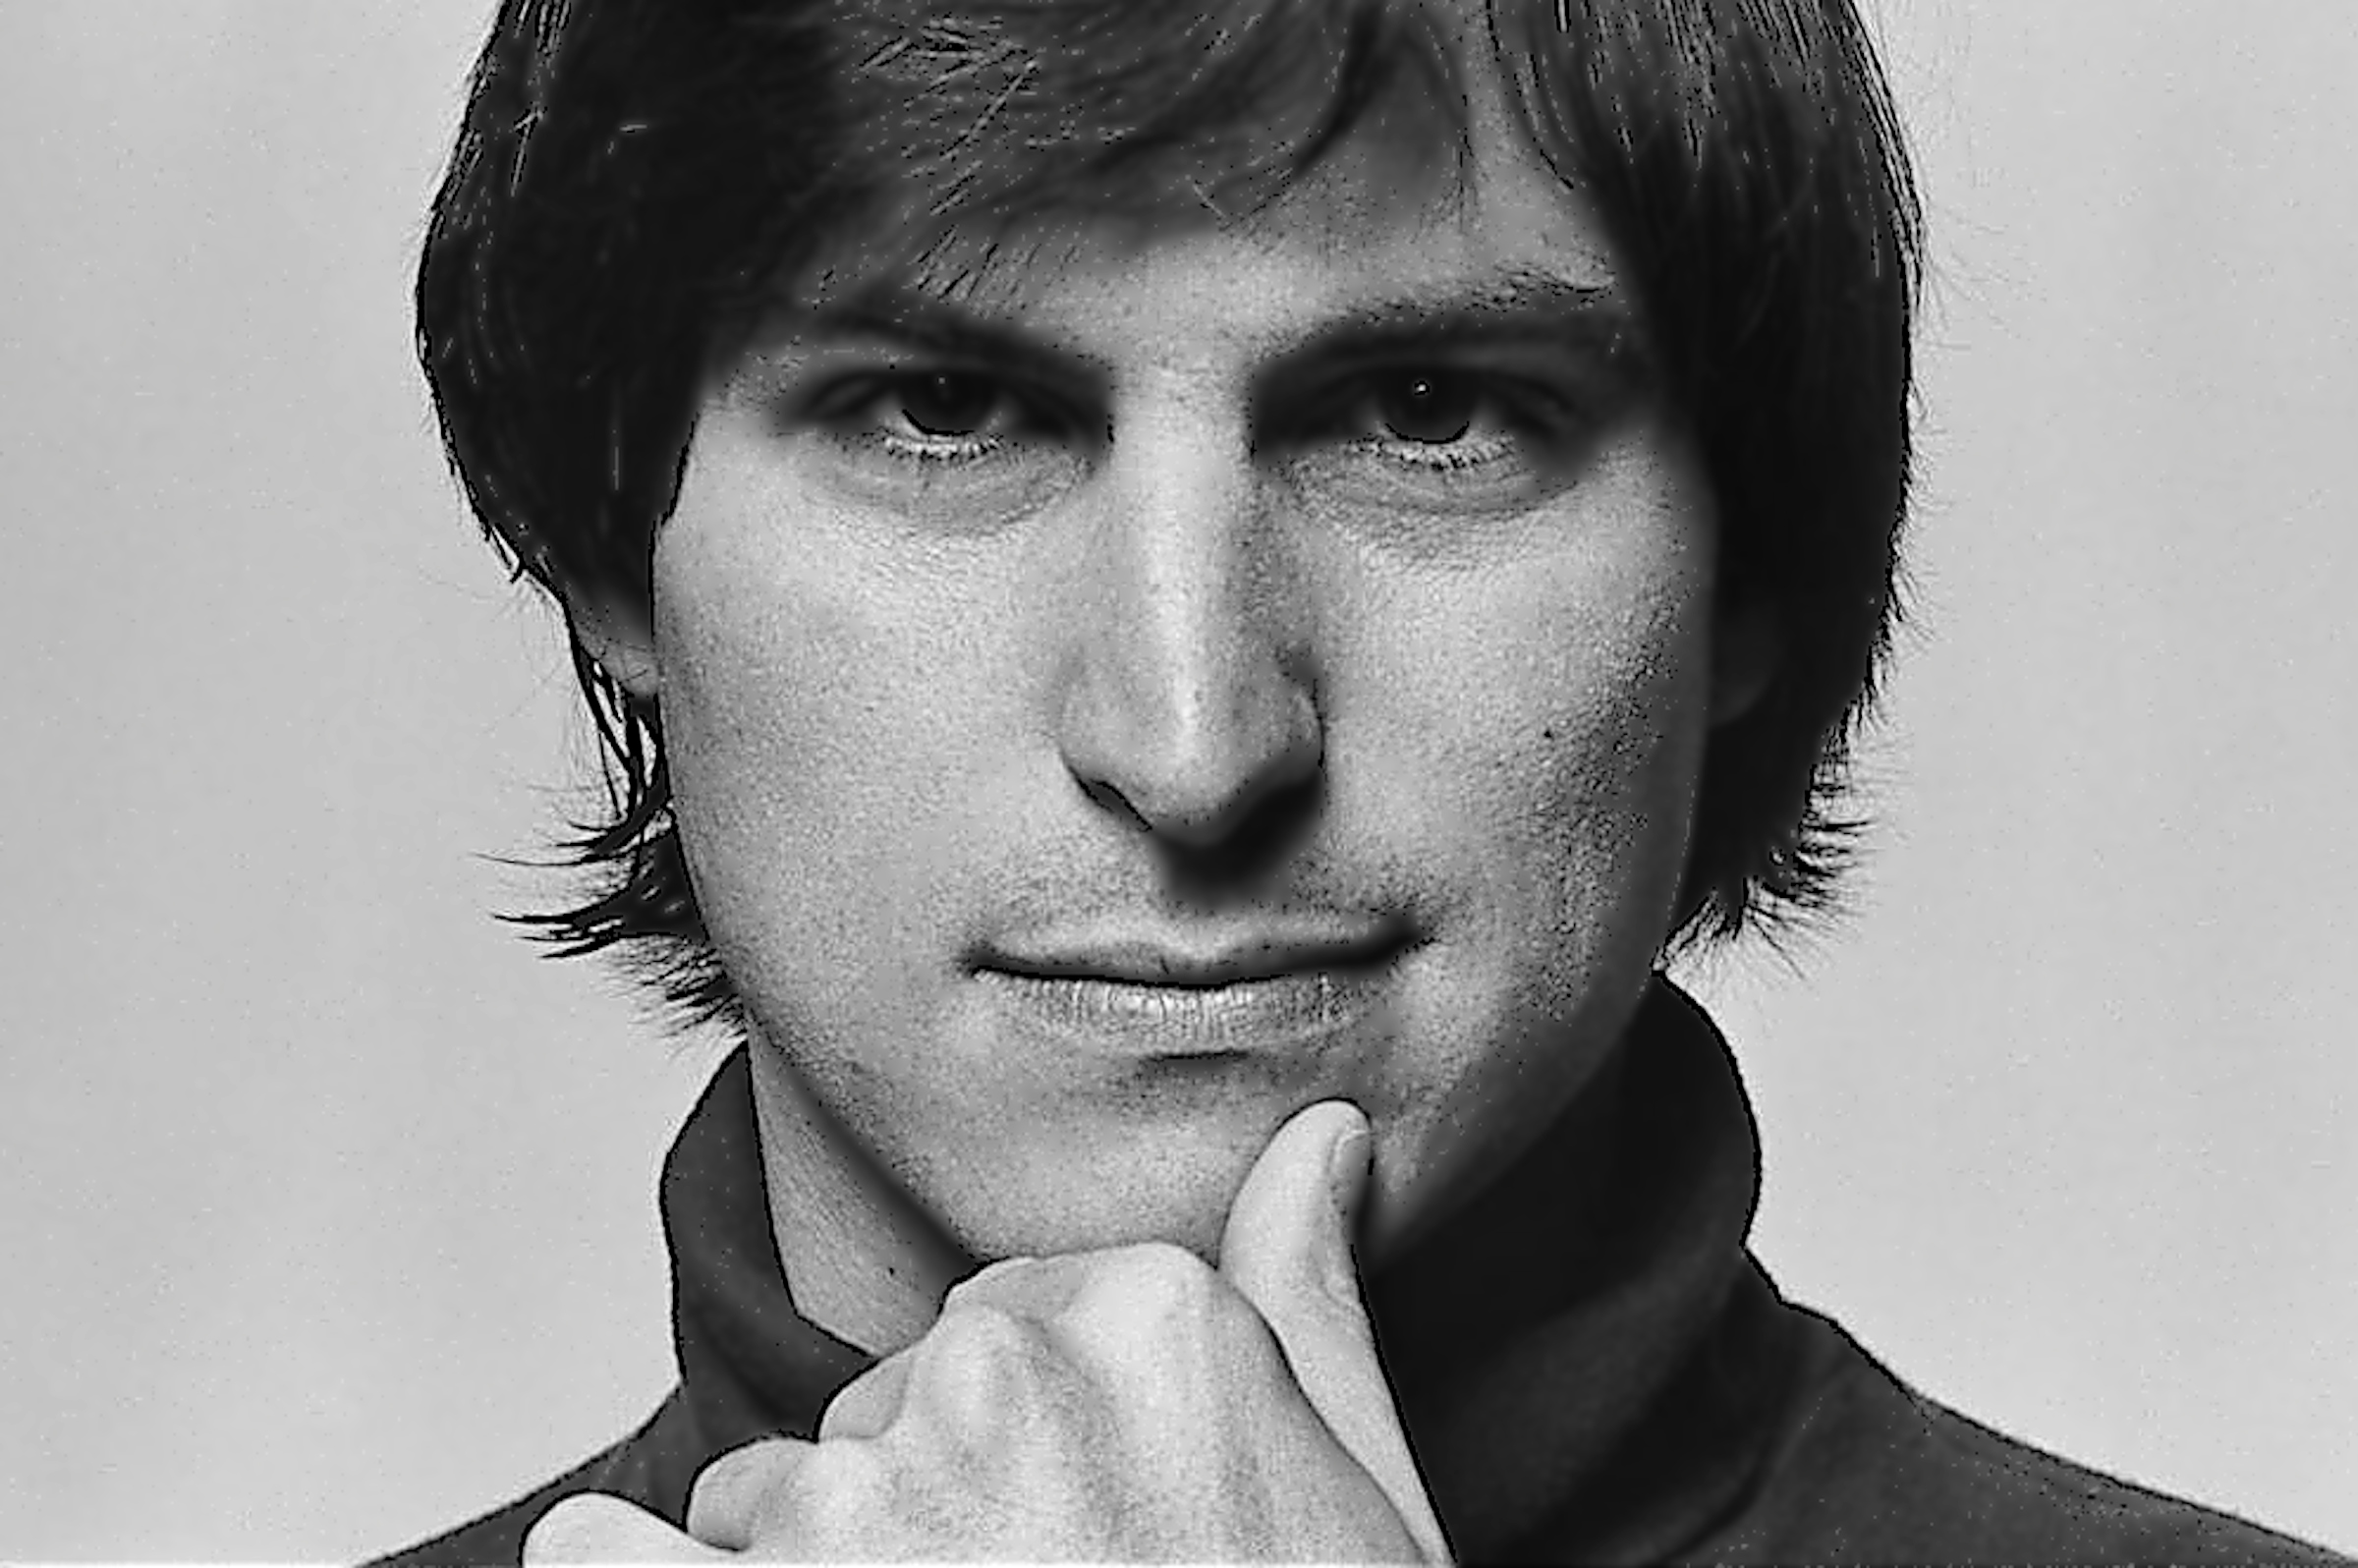 Profile image - Steve Jobs